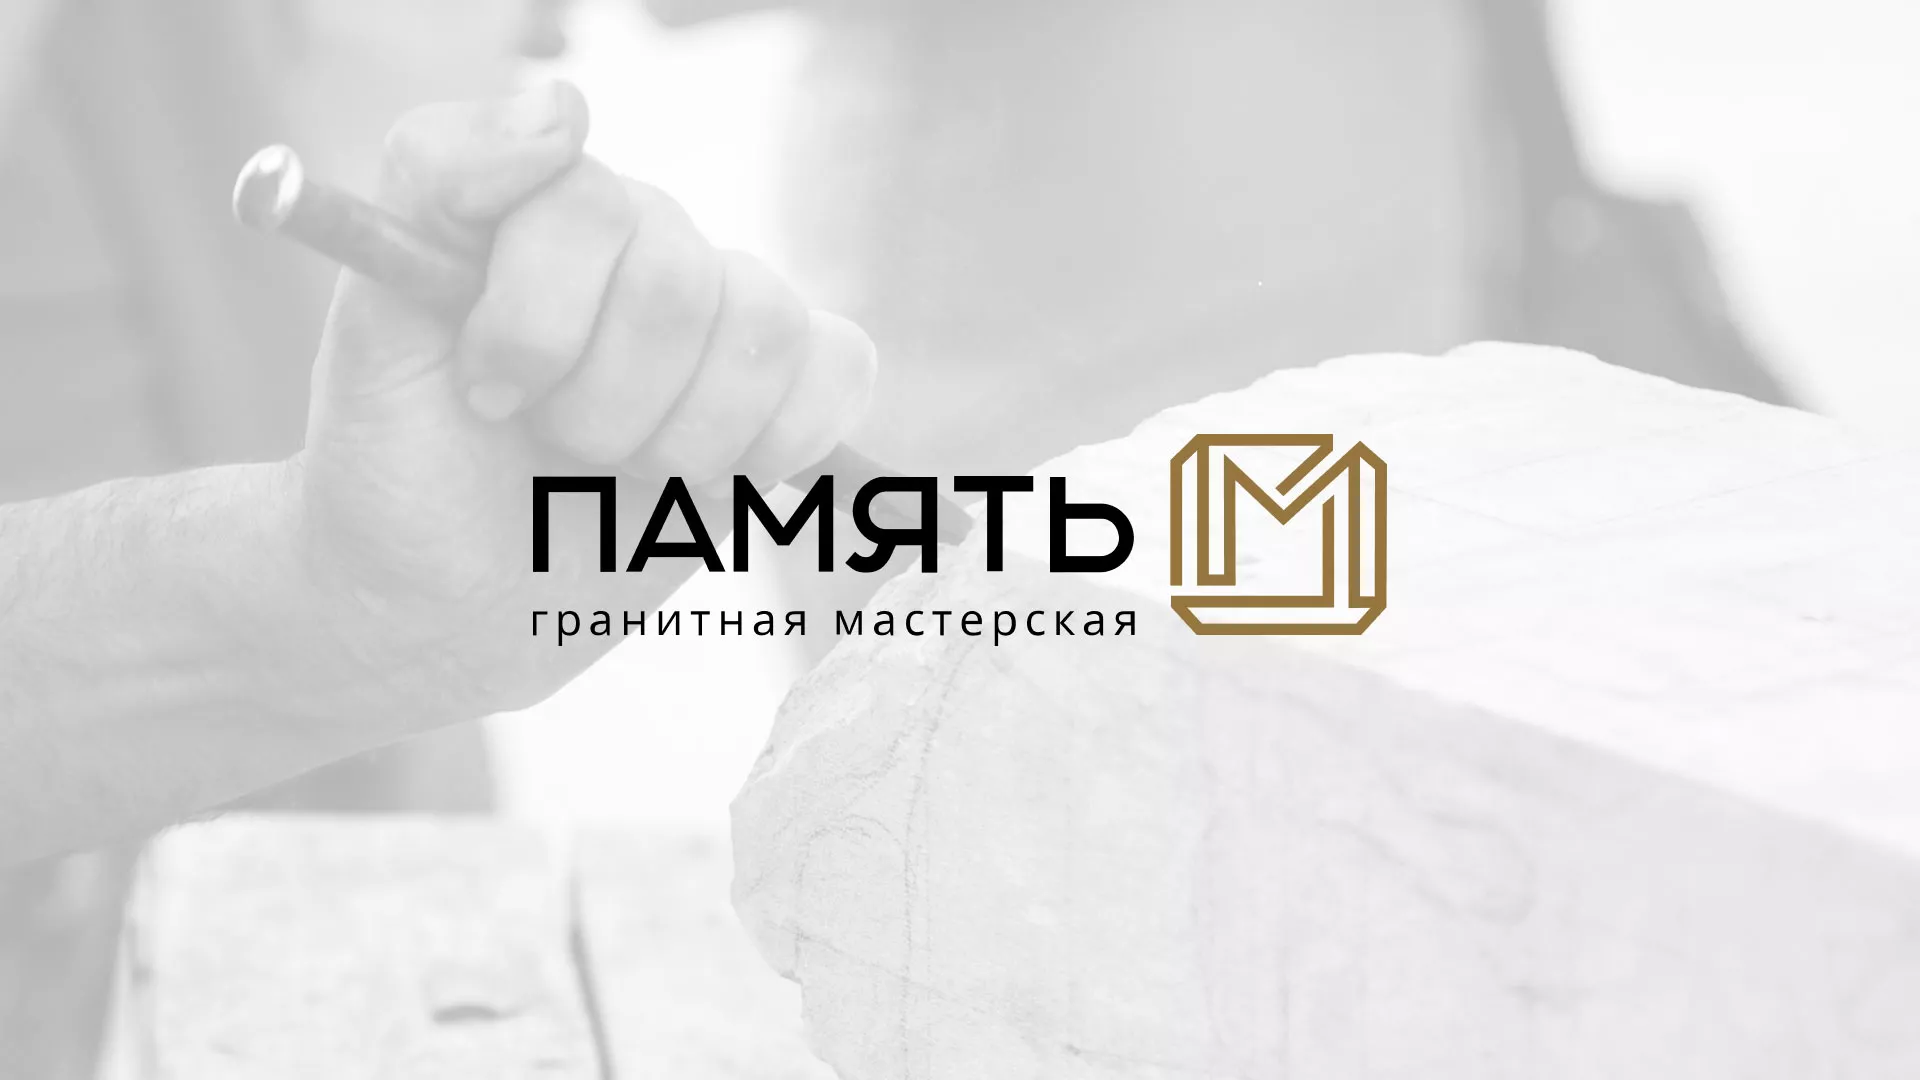 Разработка логотипа и сайта компании «Память-М» в Каменске-Уральском